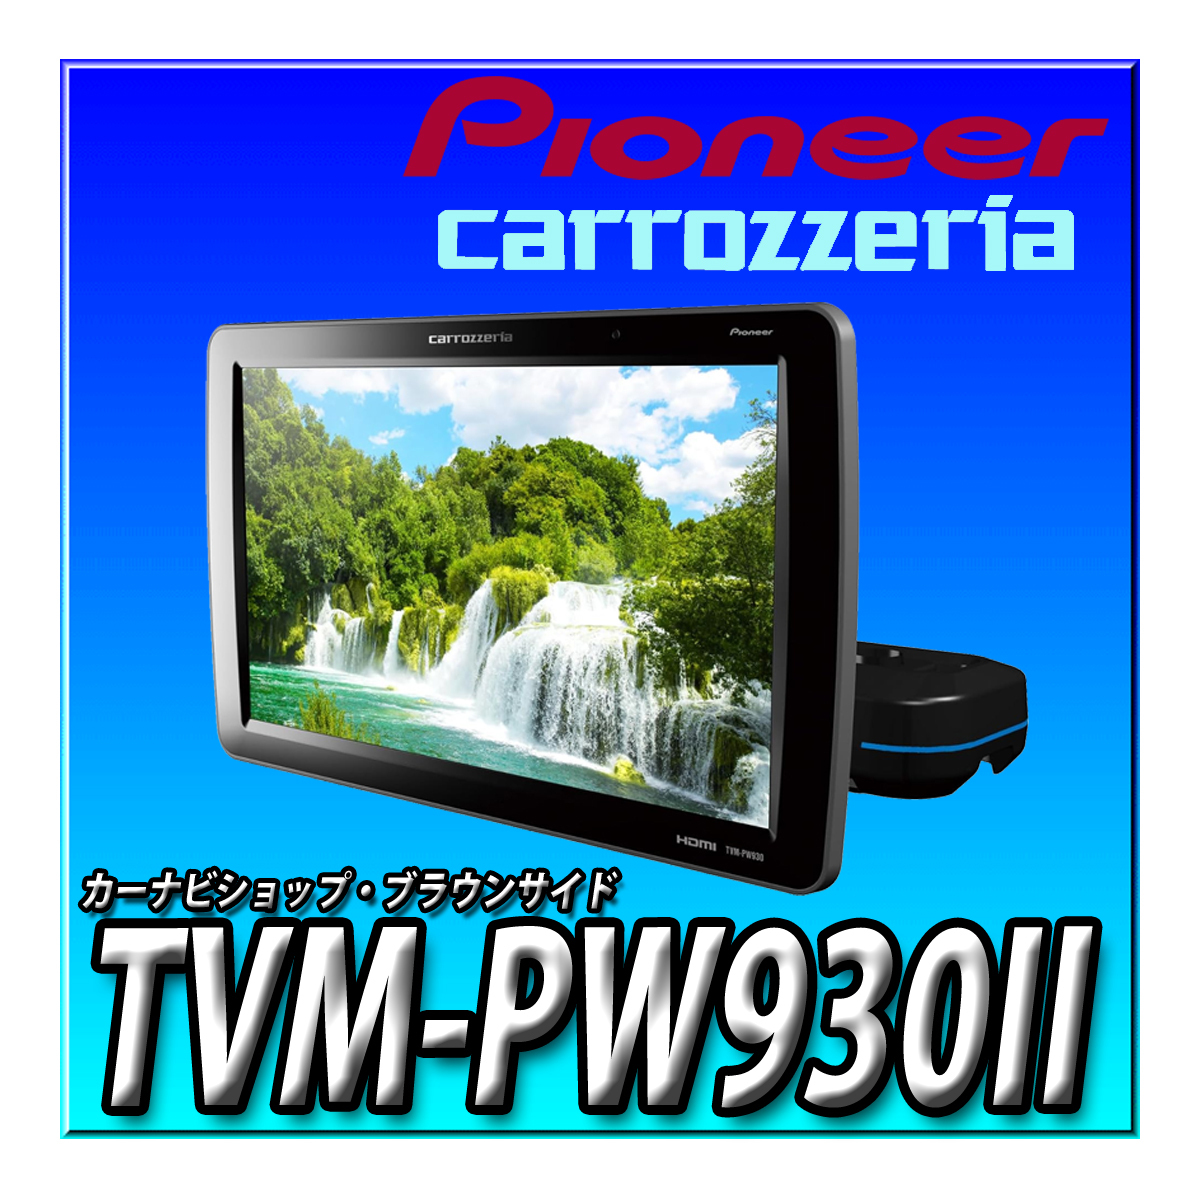 TVM-PW930II 新品未開封 Pioneer パイオニア プライベートモニター 9インチ WVGA HIGHポジションタイプ カロッツェリア リアモニター